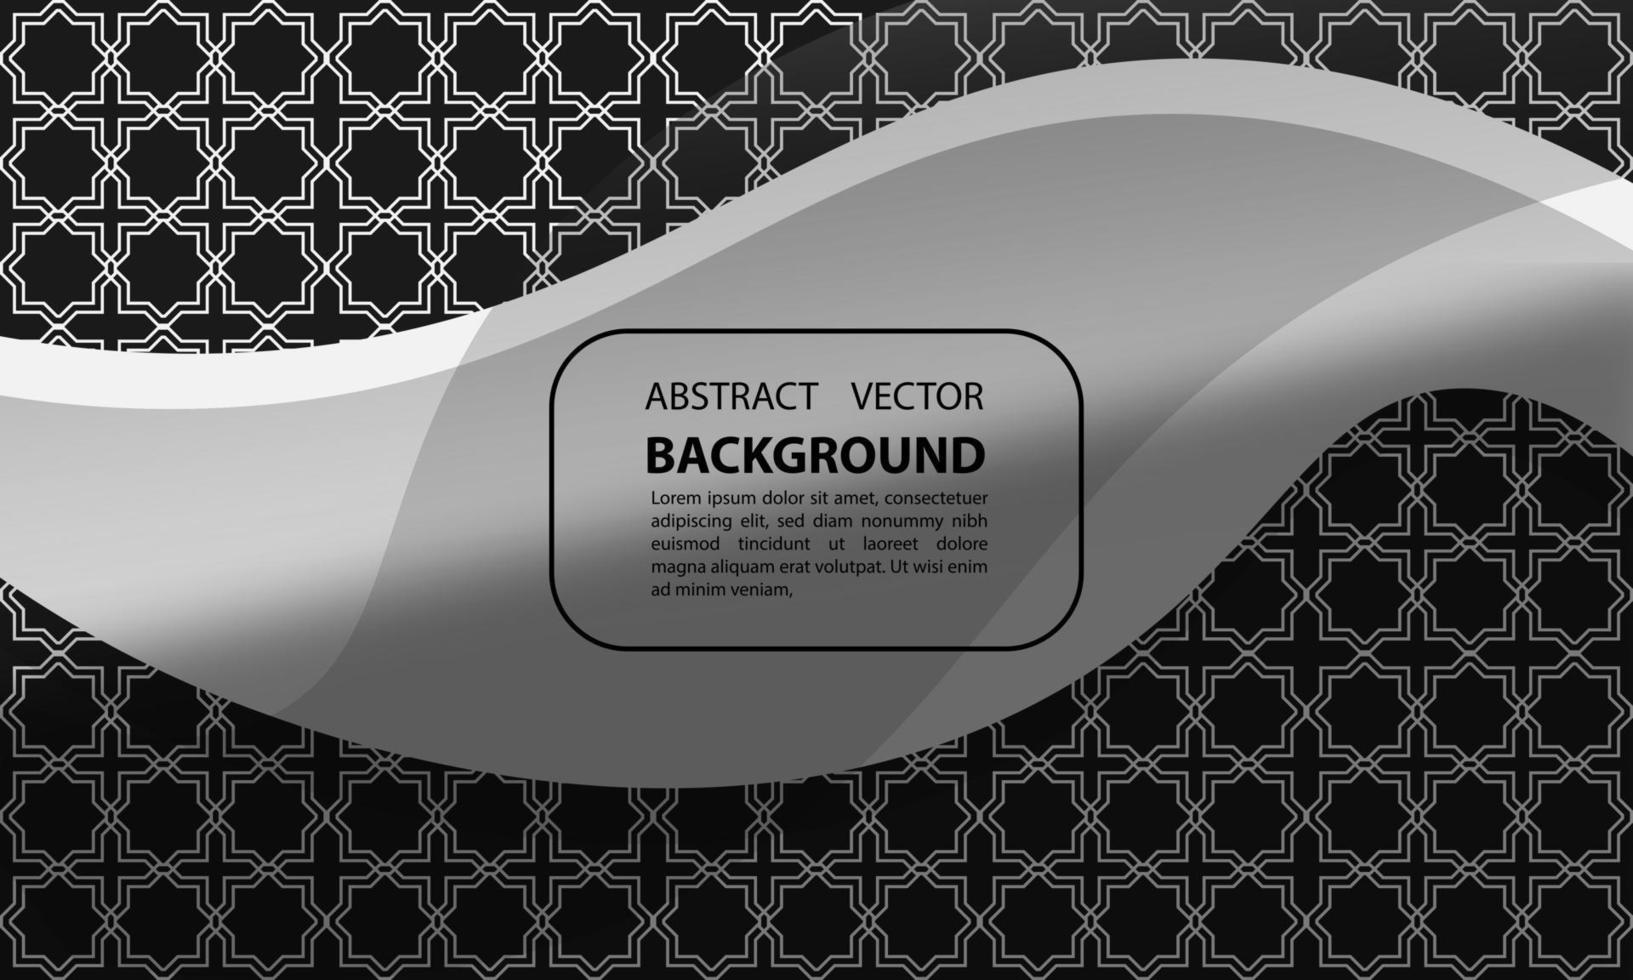 abstracte achtergrond geometrische gradiënt schaduw overlay grijs met islamitische patronen vermenigvuldigd voor posters, banners en anderen, vector design eps 10